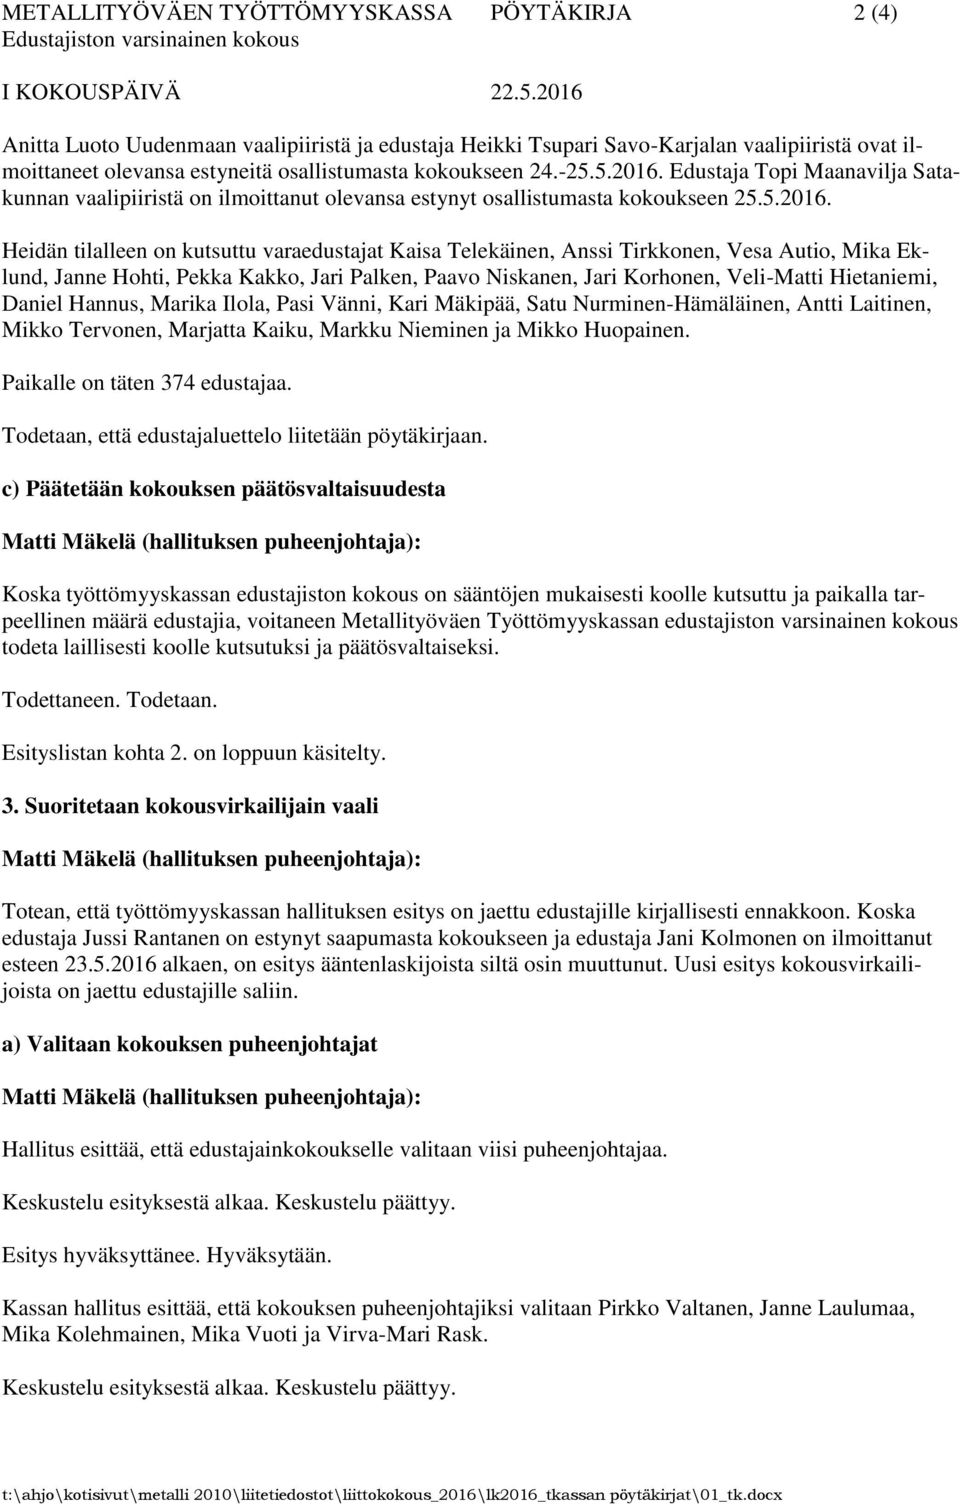 Edustaja Topi Maanavilja Satakunnan vaalipiiristä on ilmoittanut olevansa estynyt osallistumasta kokoukseen 25.5.2016.